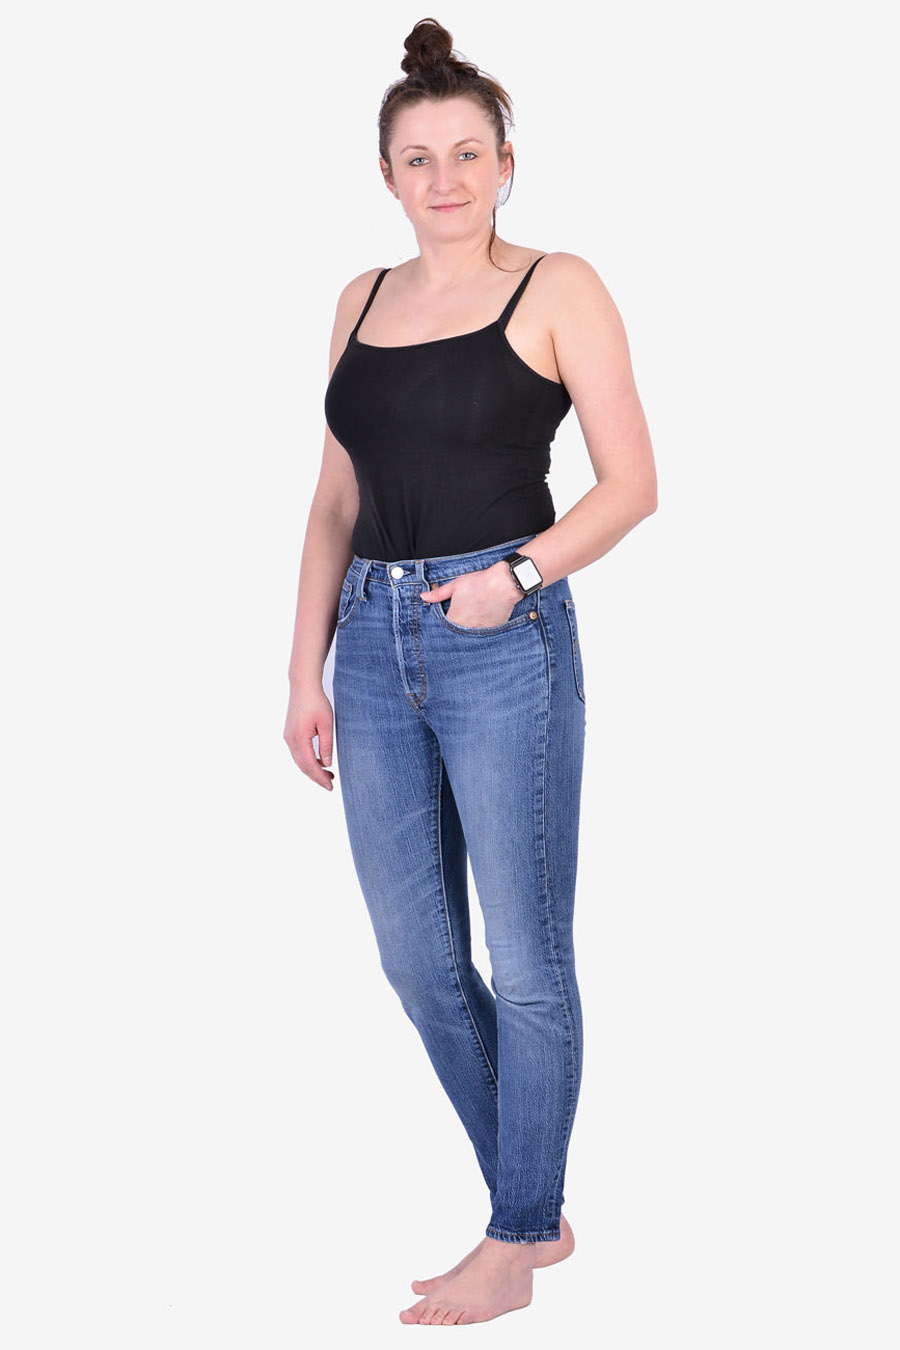 Women's Vintage Levi's 501 Jeans | Size 29/30 - Brick Vintage